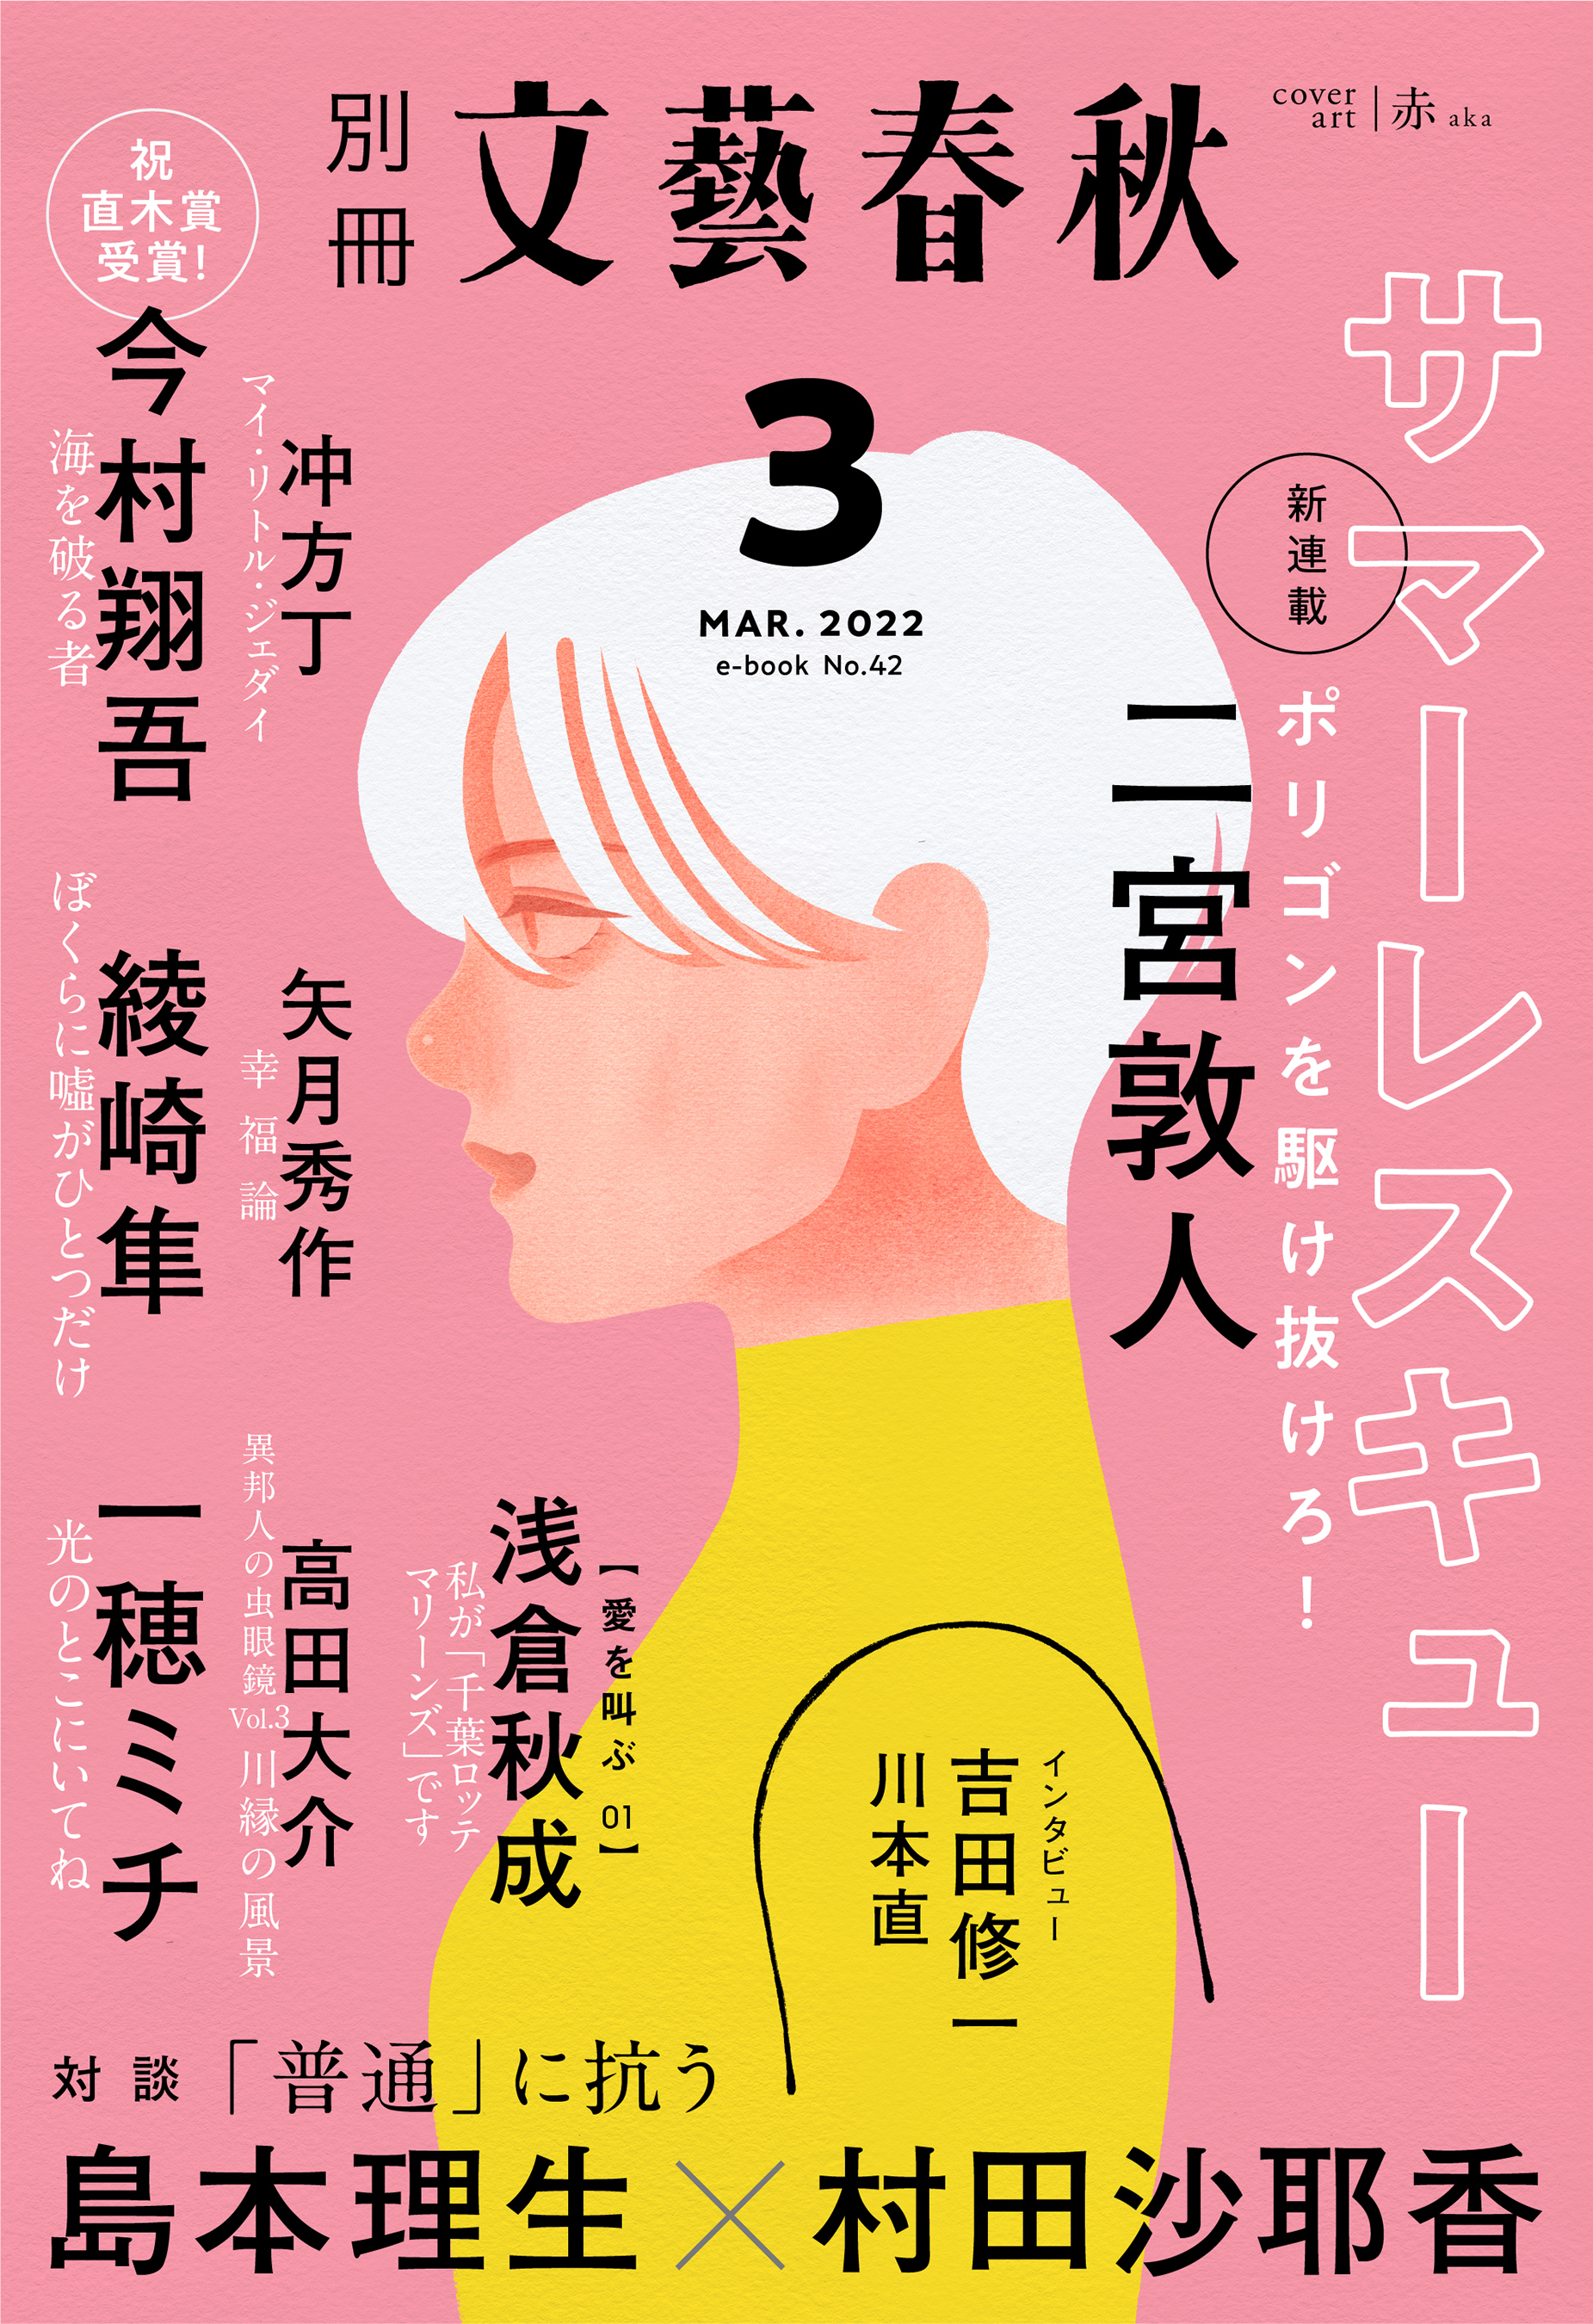 合本 ザ・マジック 6 Vol.51～60 東京堂出版生活諸芸娯楽 